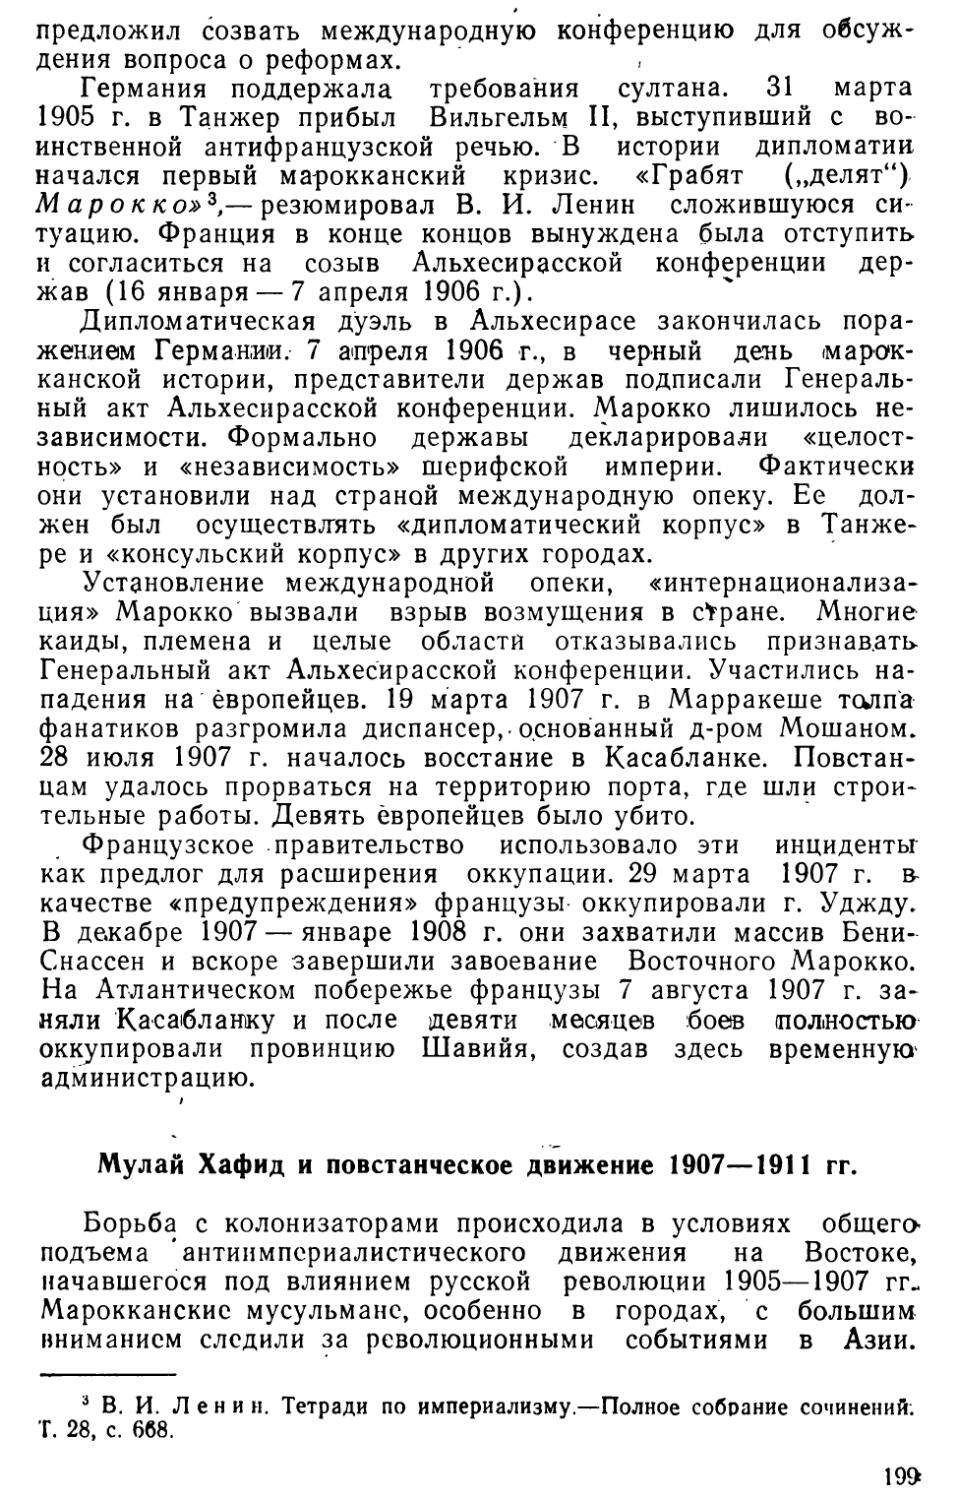 Мулай Хафид и повстанческое движение 1907—1911 гг.